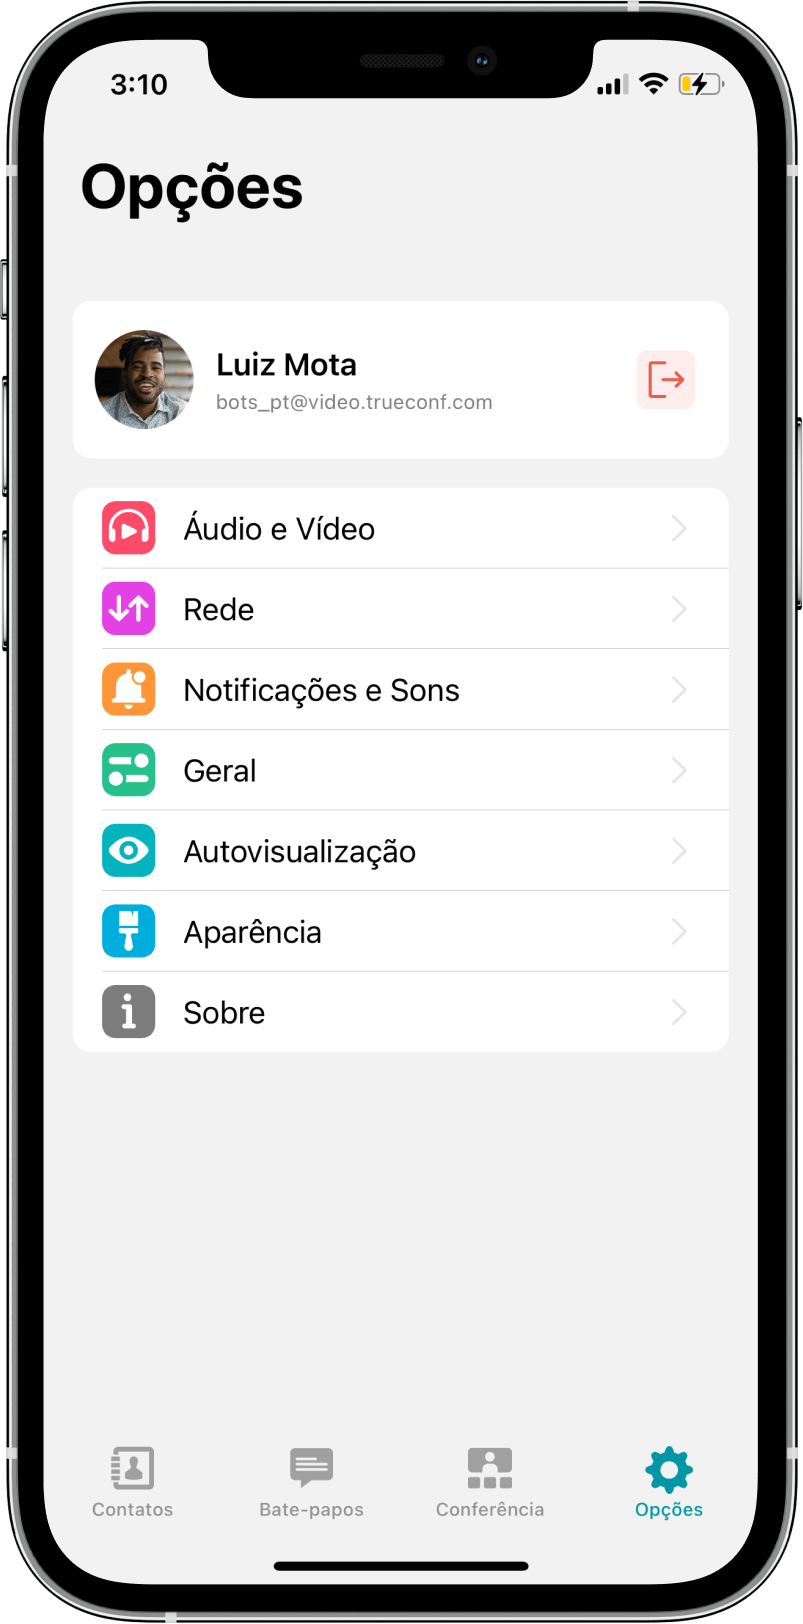 TrueConf 3.3 para iOS: nova interface do usuário, modo de reunião inteligente, acesso offline a chats, contatos e histórico de chamadas 19